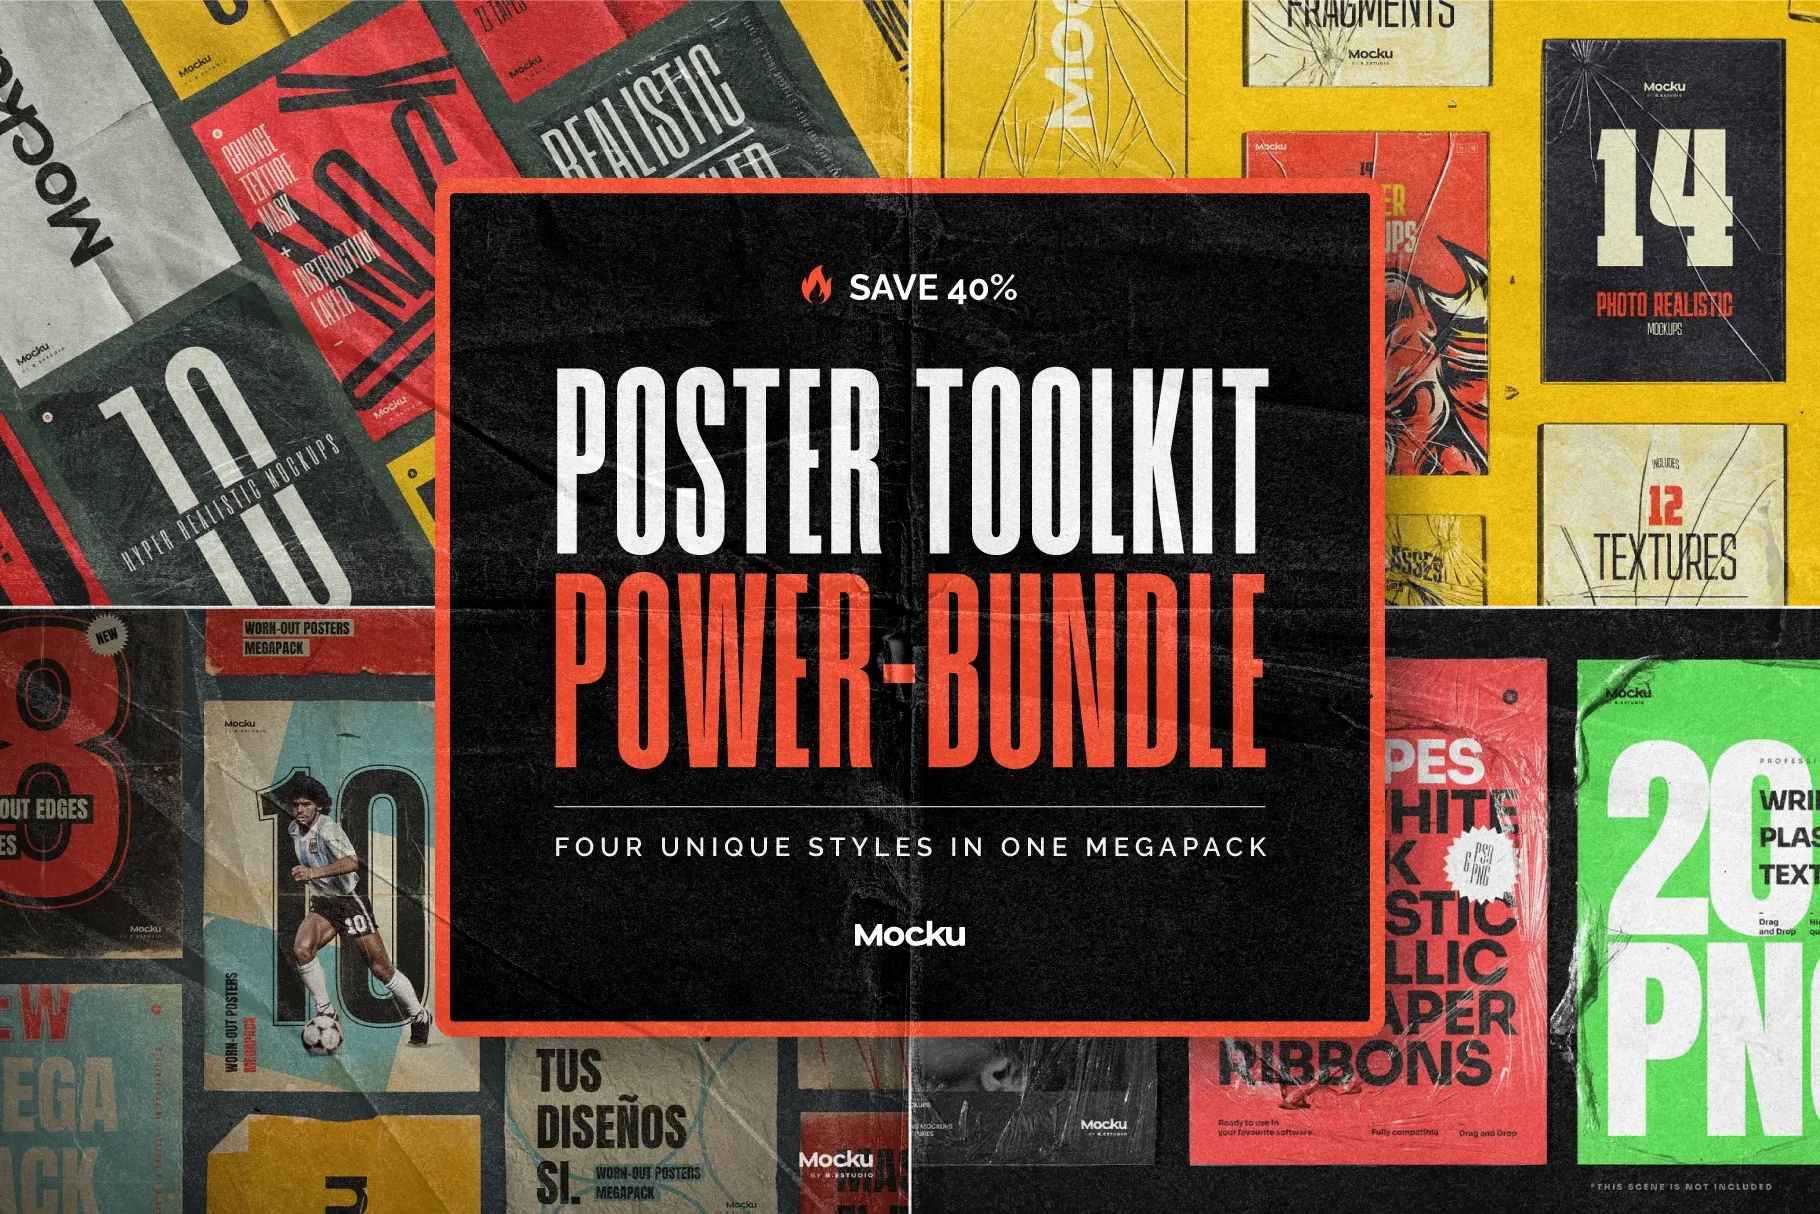 Poster Toolkit Power Bundlethumbnaile